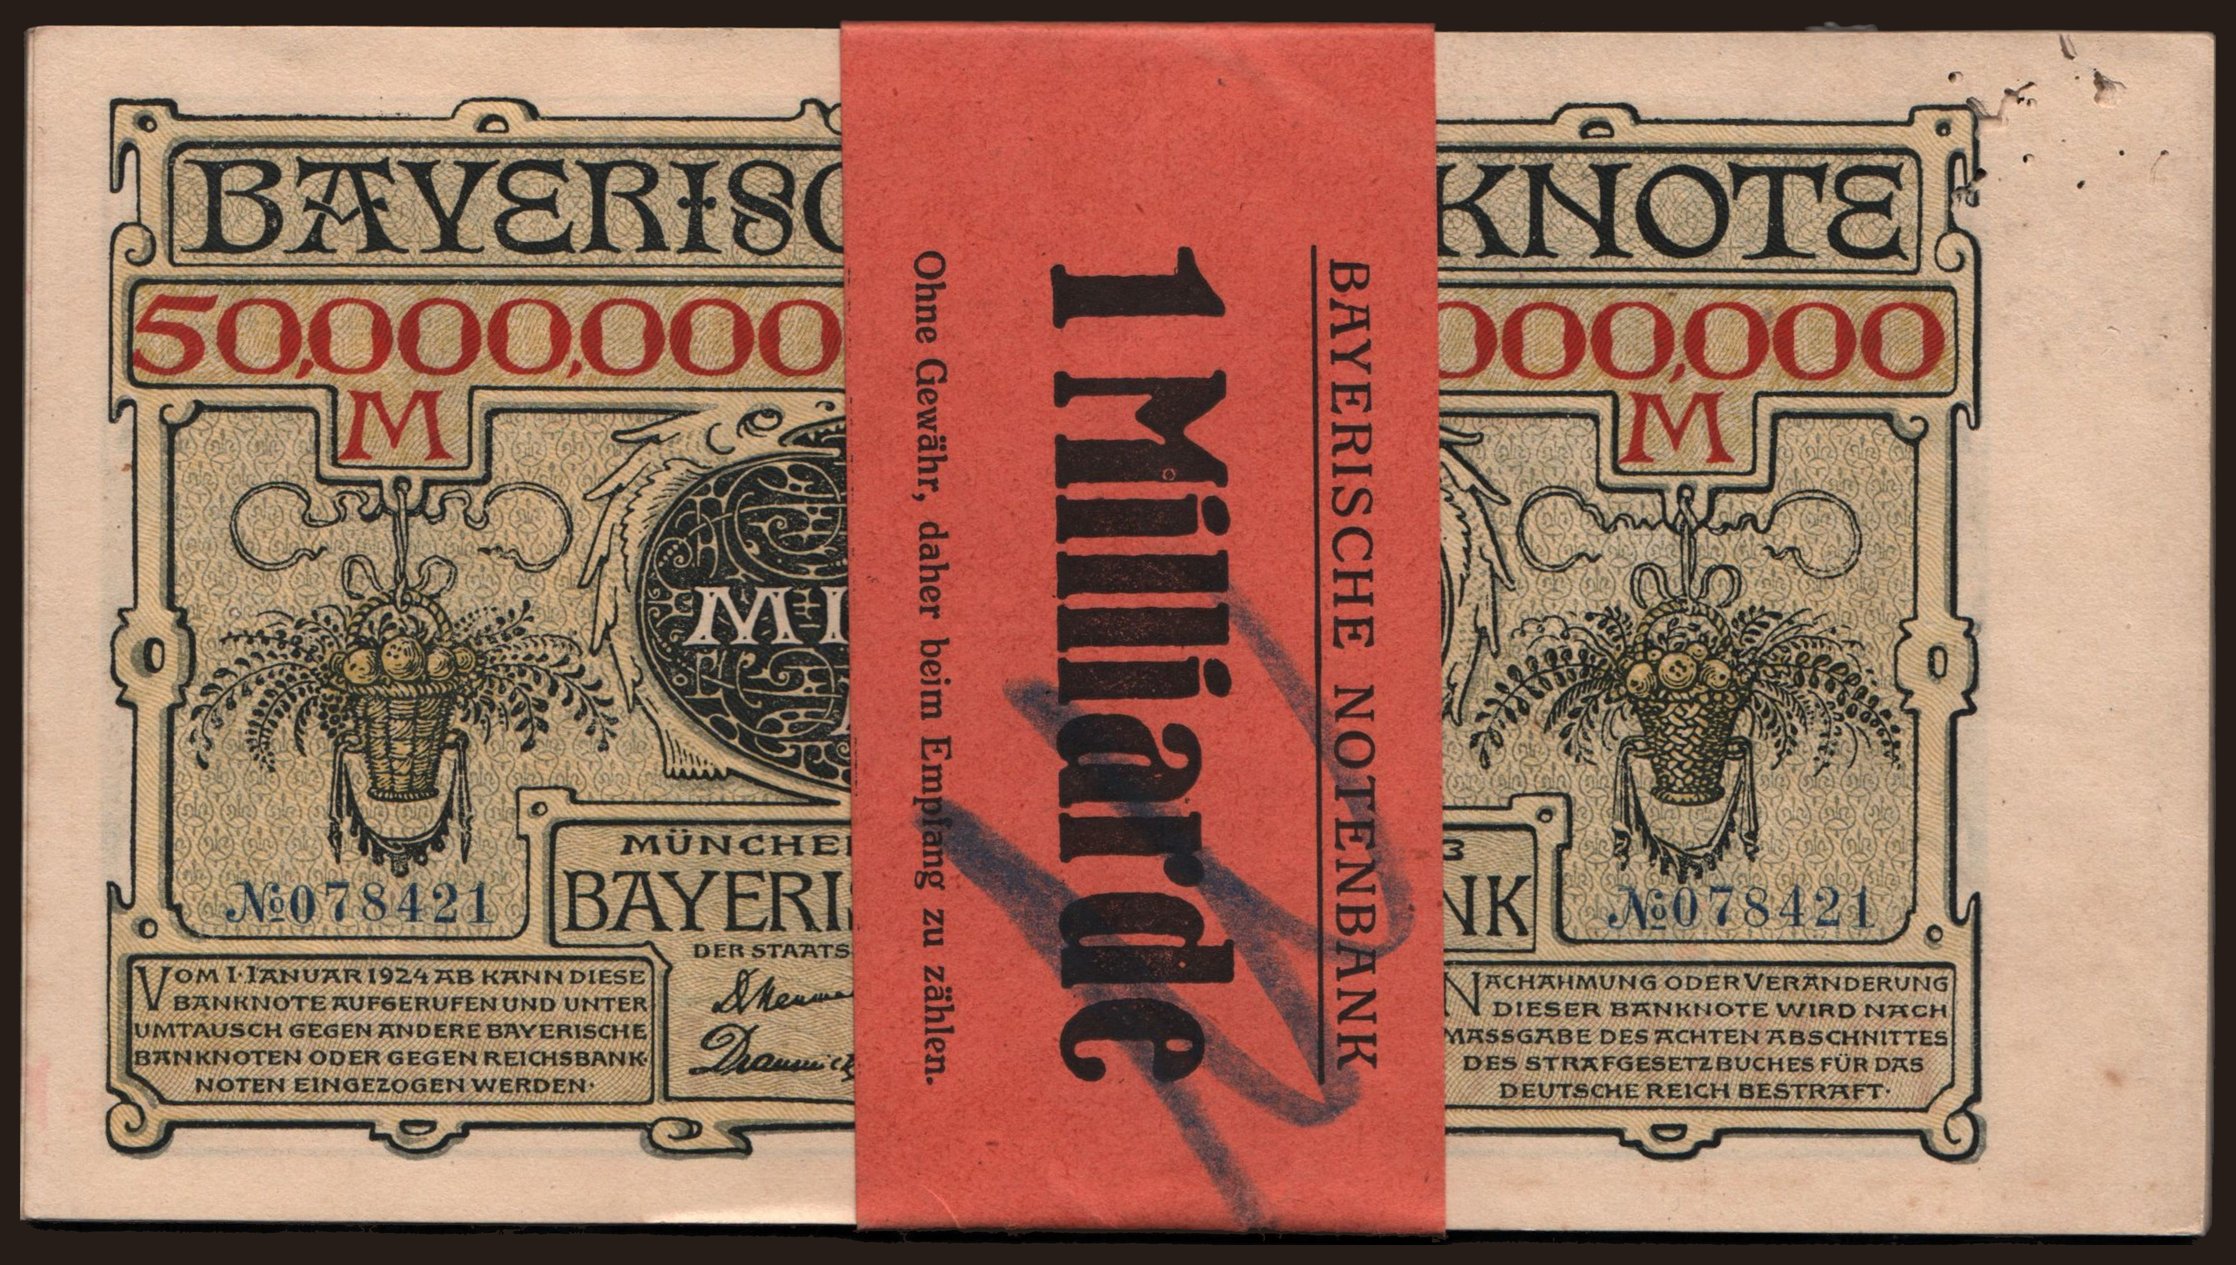 Bayerische Notenbank, 50.000.000 Mark, 1923, 20x